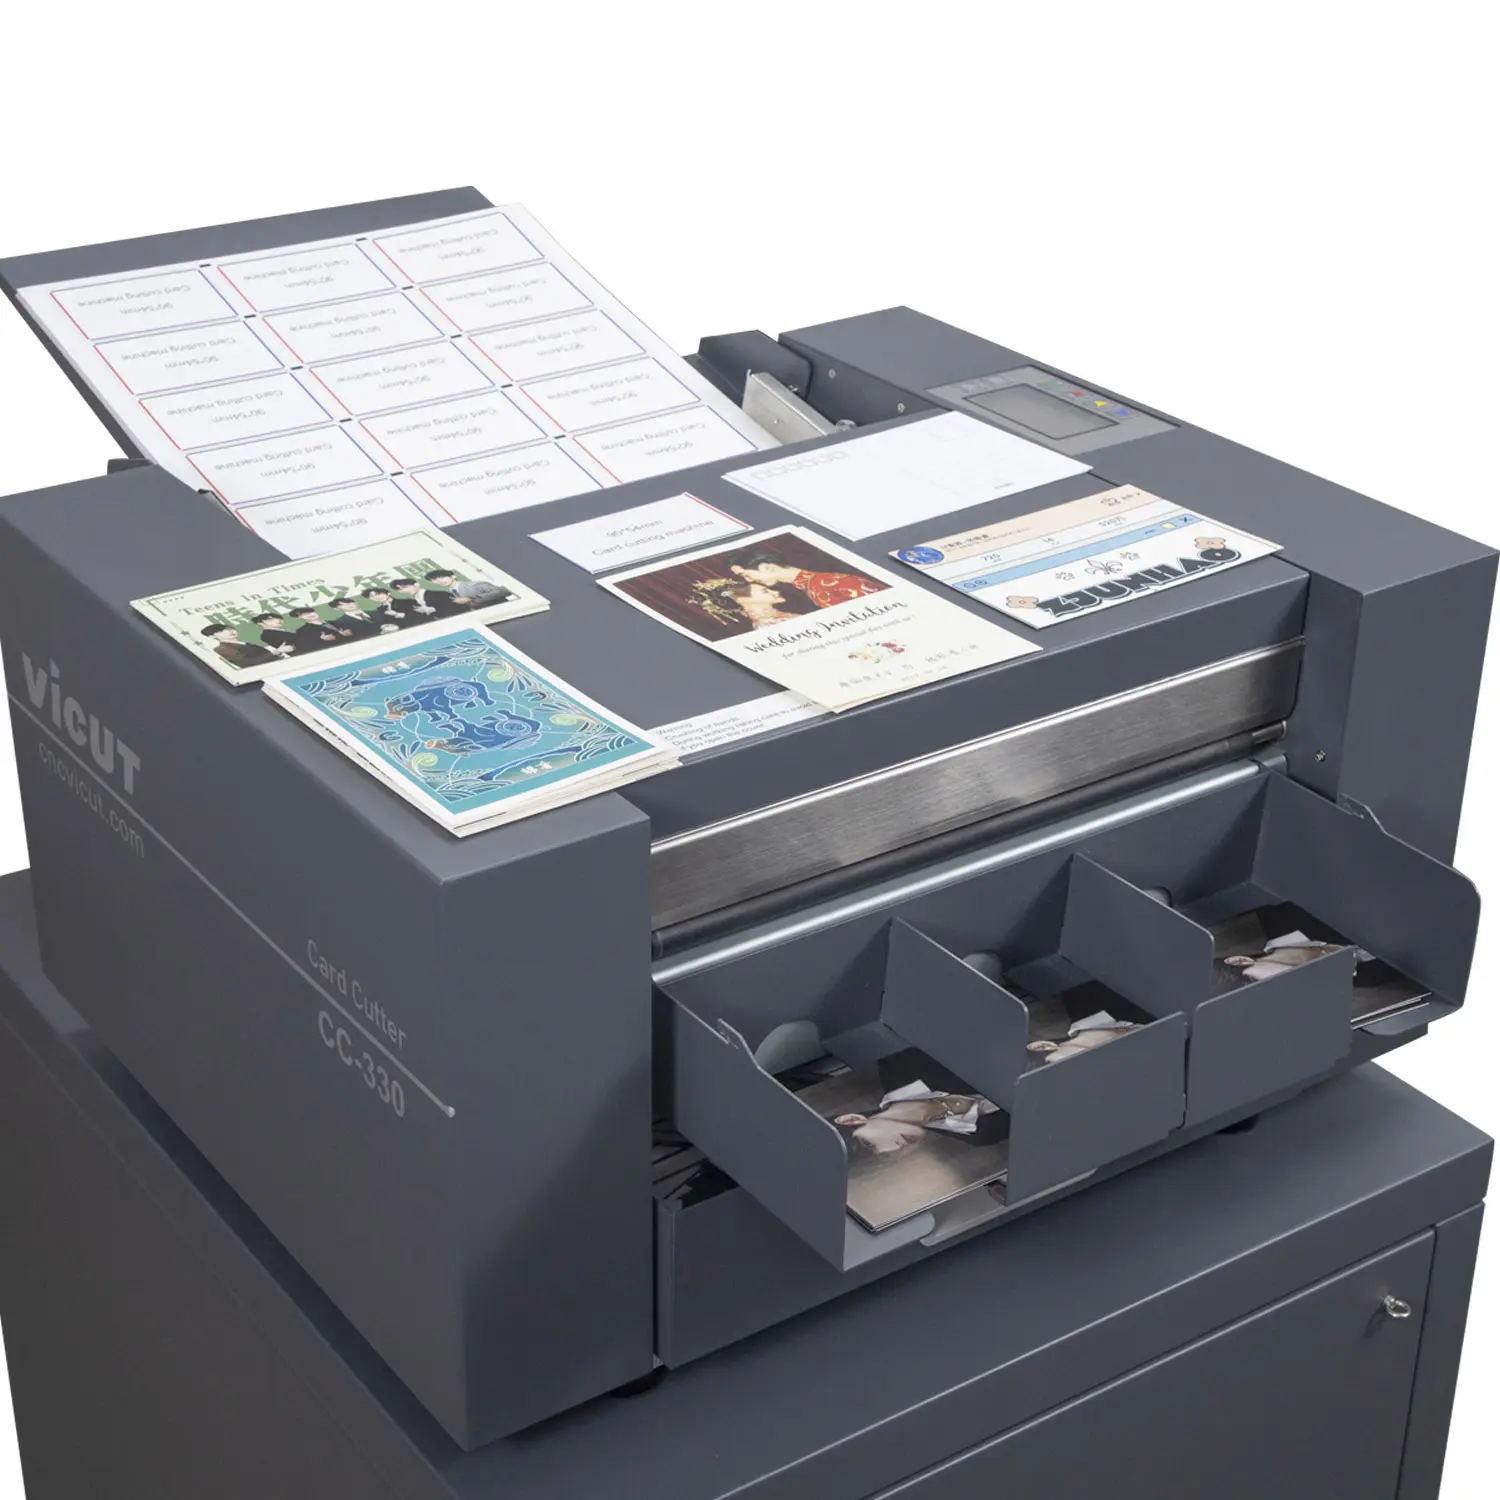 पूरी तरह से स्वचालन व्यापार कार्ड/कॉलिंग/नाम कार्ड कटर मशीन डिजिटल फोटो कागज काटने की मशीन मॉडल CC-330